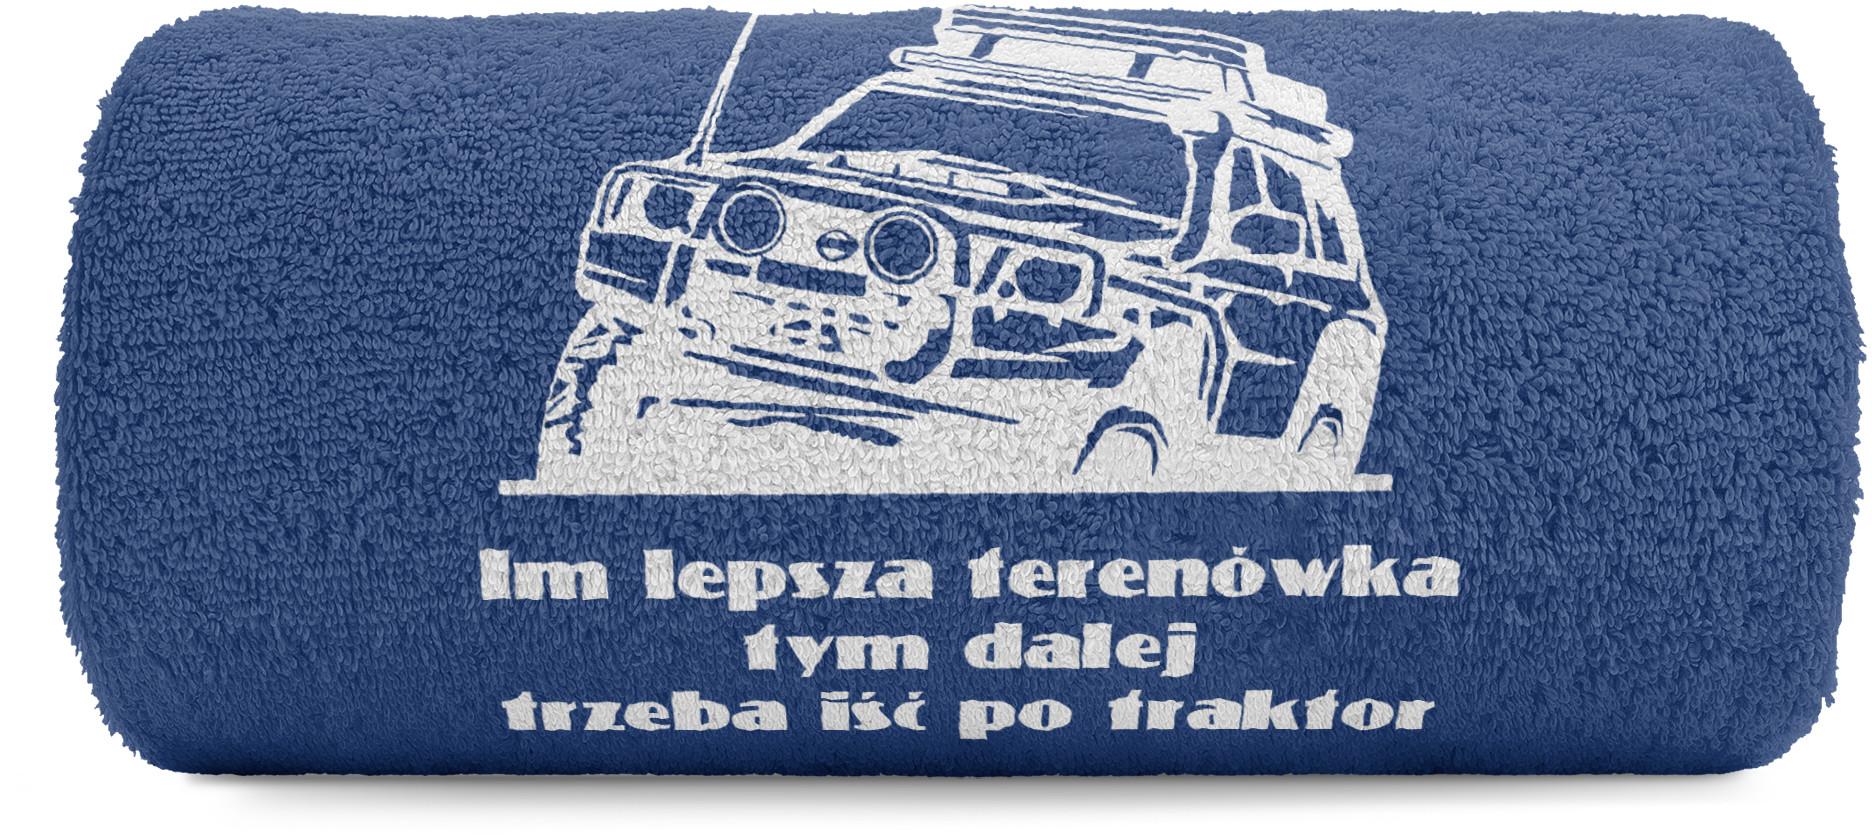 pat15.net Mały ręcznik do rąk off-road 4x4 50x100 Nissan Patrol - im lepsza... 1089